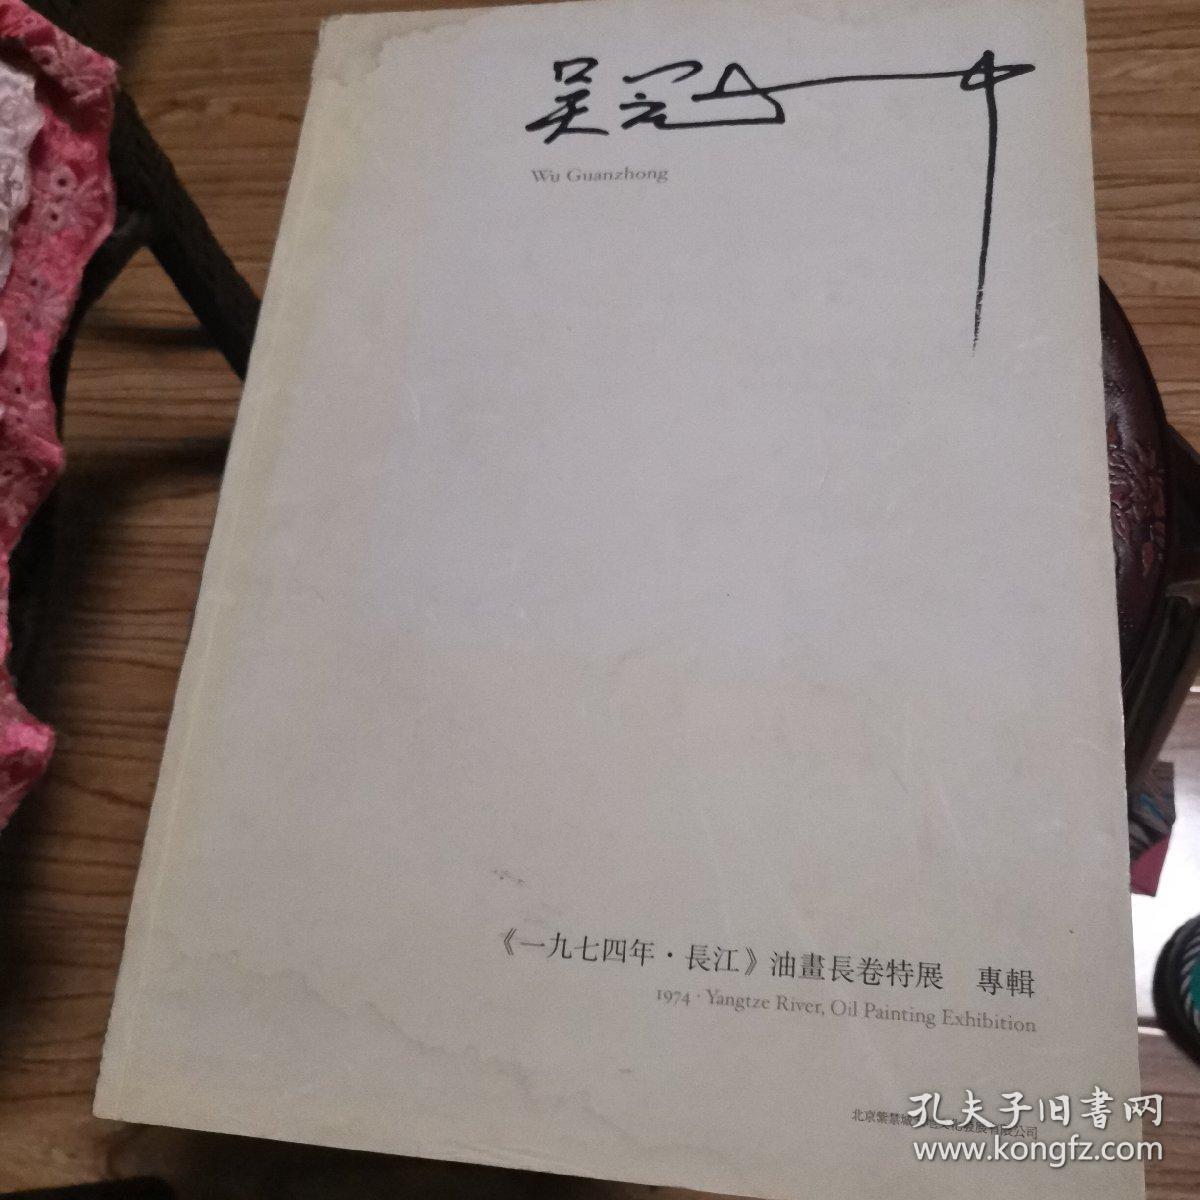 吴冠中、1974年、长江、油画长卷特展专辑